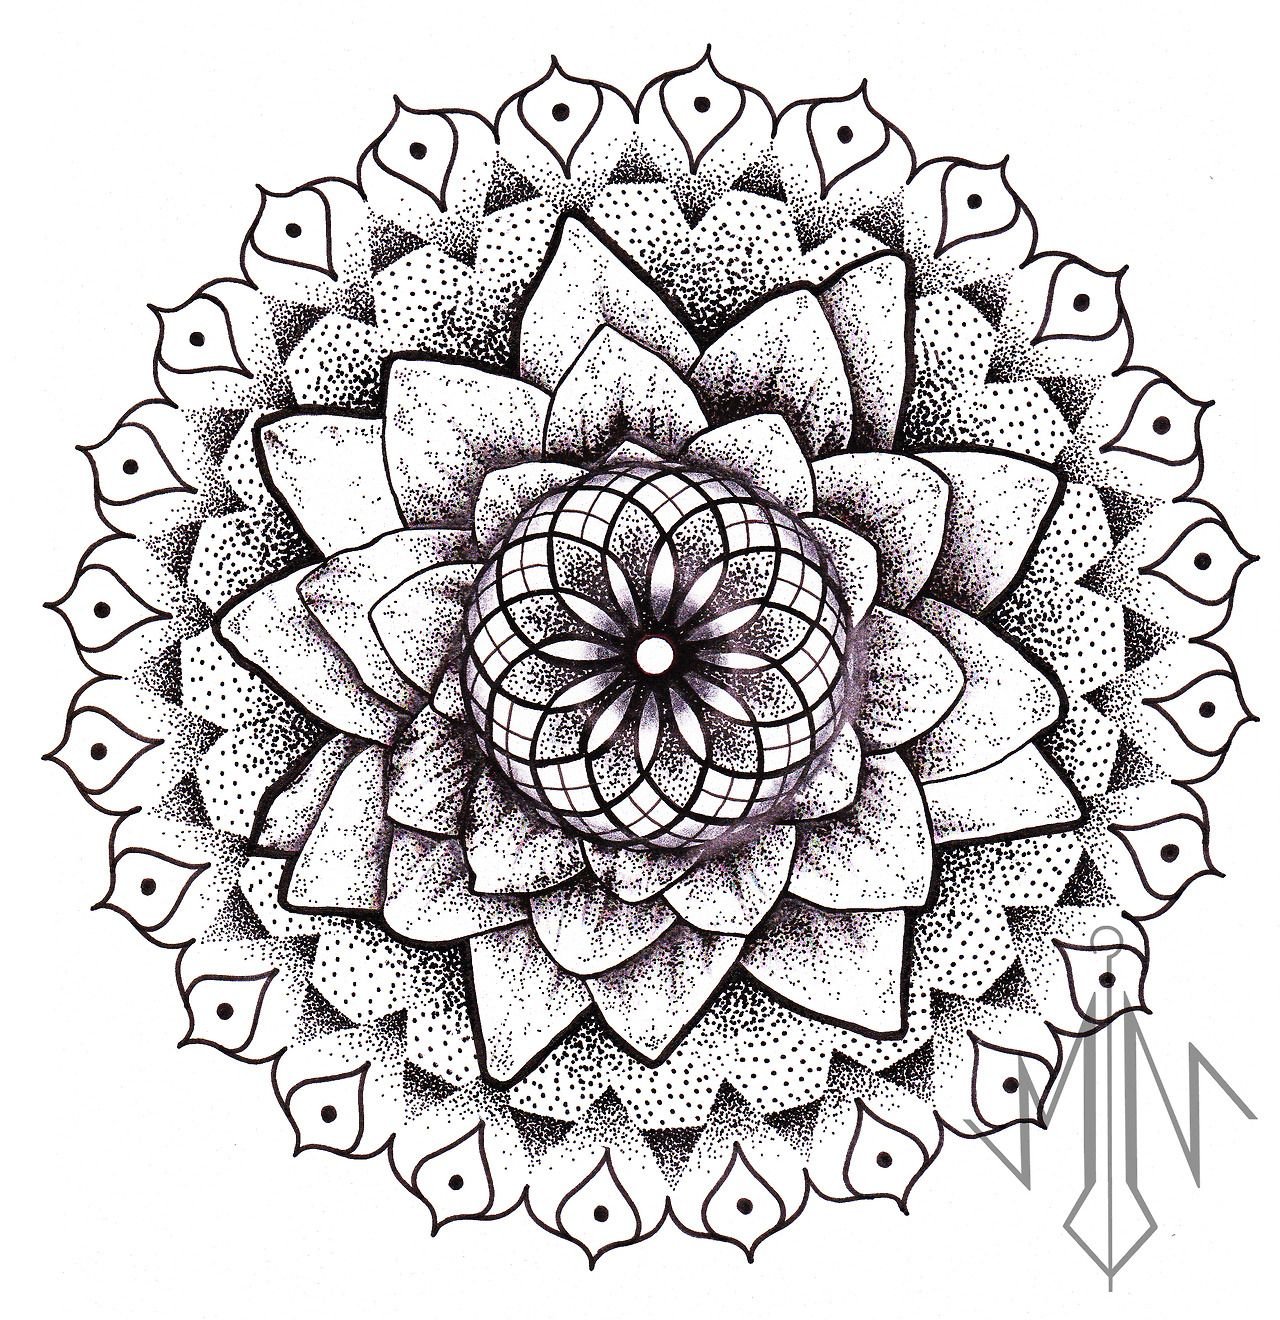 How to draw a Mandala | 75 Simple Mandala Drawing Ideas and Designs -  HERCOTTAGE | Mandala drawing, Simple mandala, Mandala art lesson